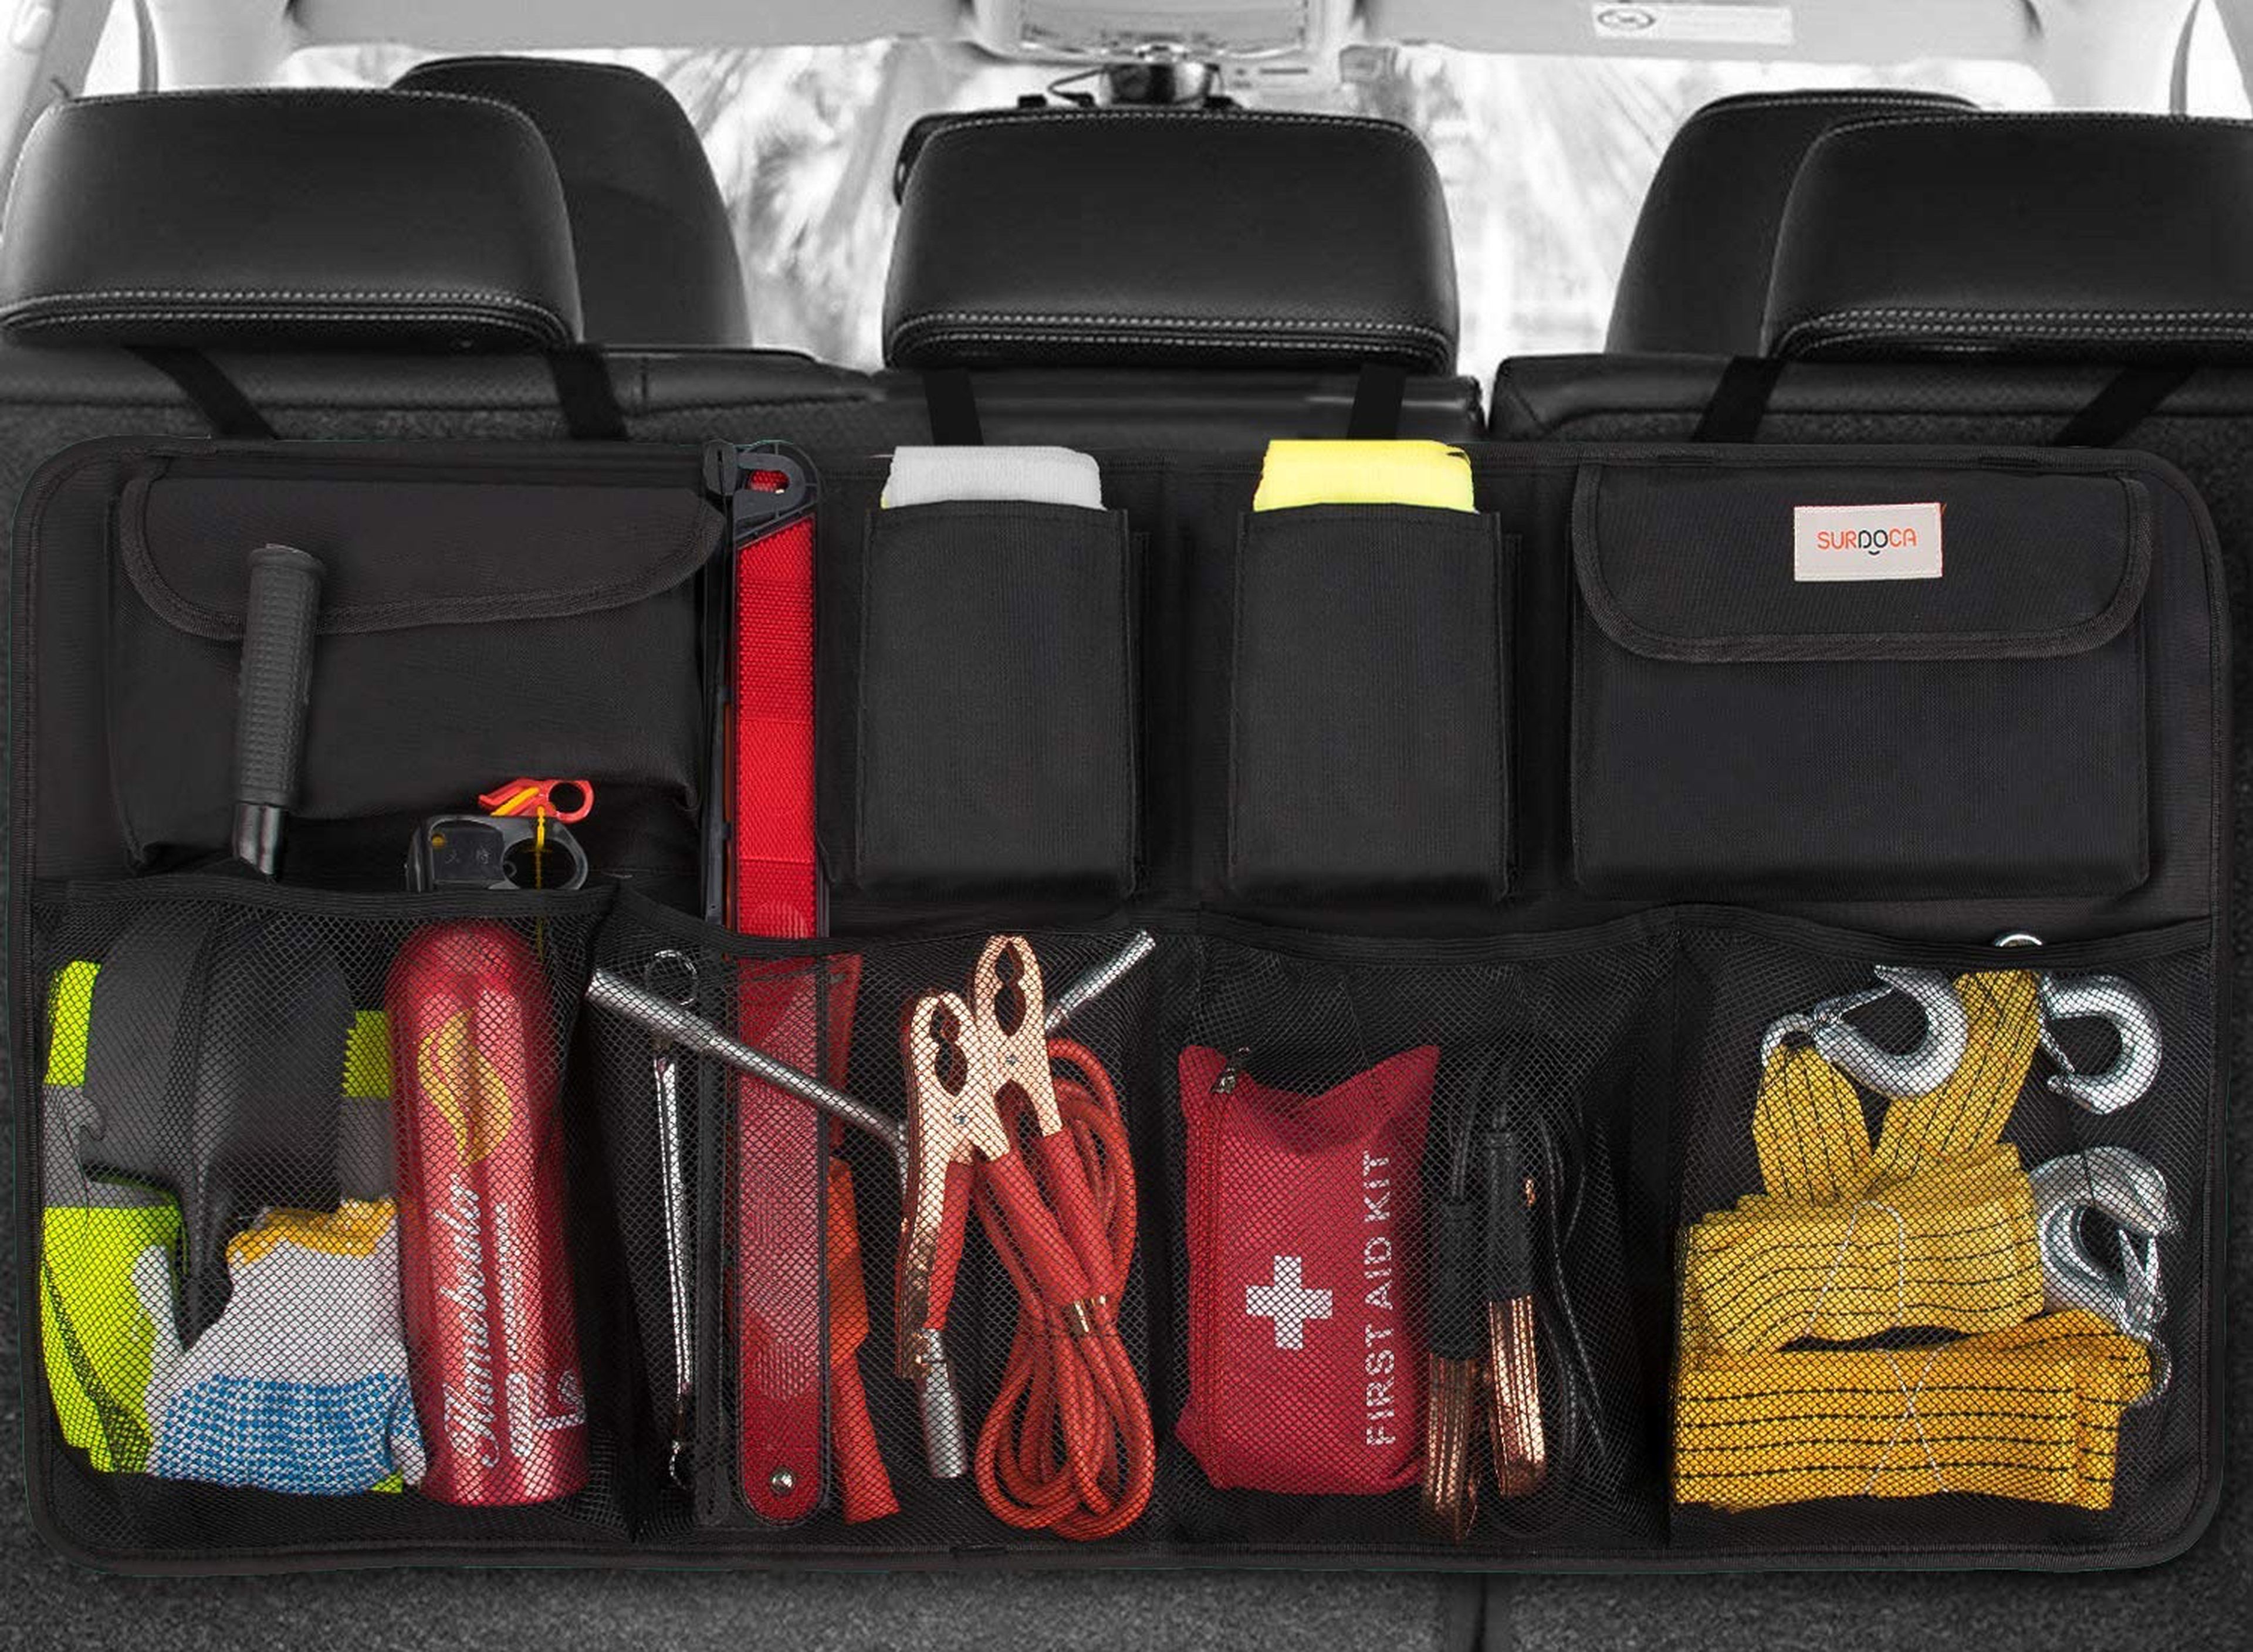 Di adiós al desorden en tu coche: estos accesorios te ayudarán a